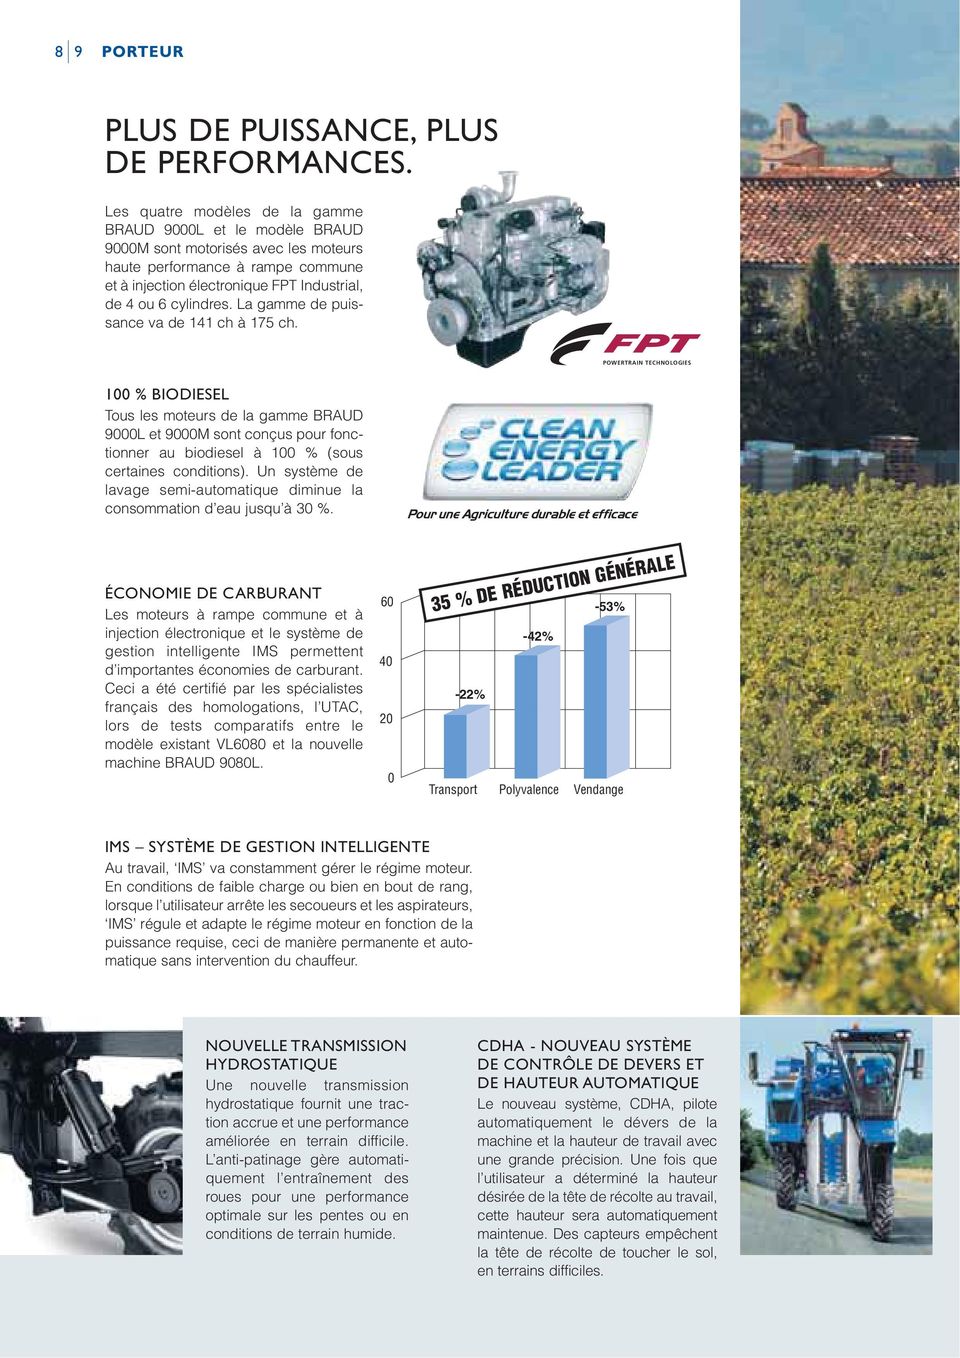 POWERTRAIN TECHNOLOGIES Tous les moteurs de la gamme BRAUD 9000L et 9000M sont conçus pour fonctionner au biodiesel à 100 % (sous certaines conditions).